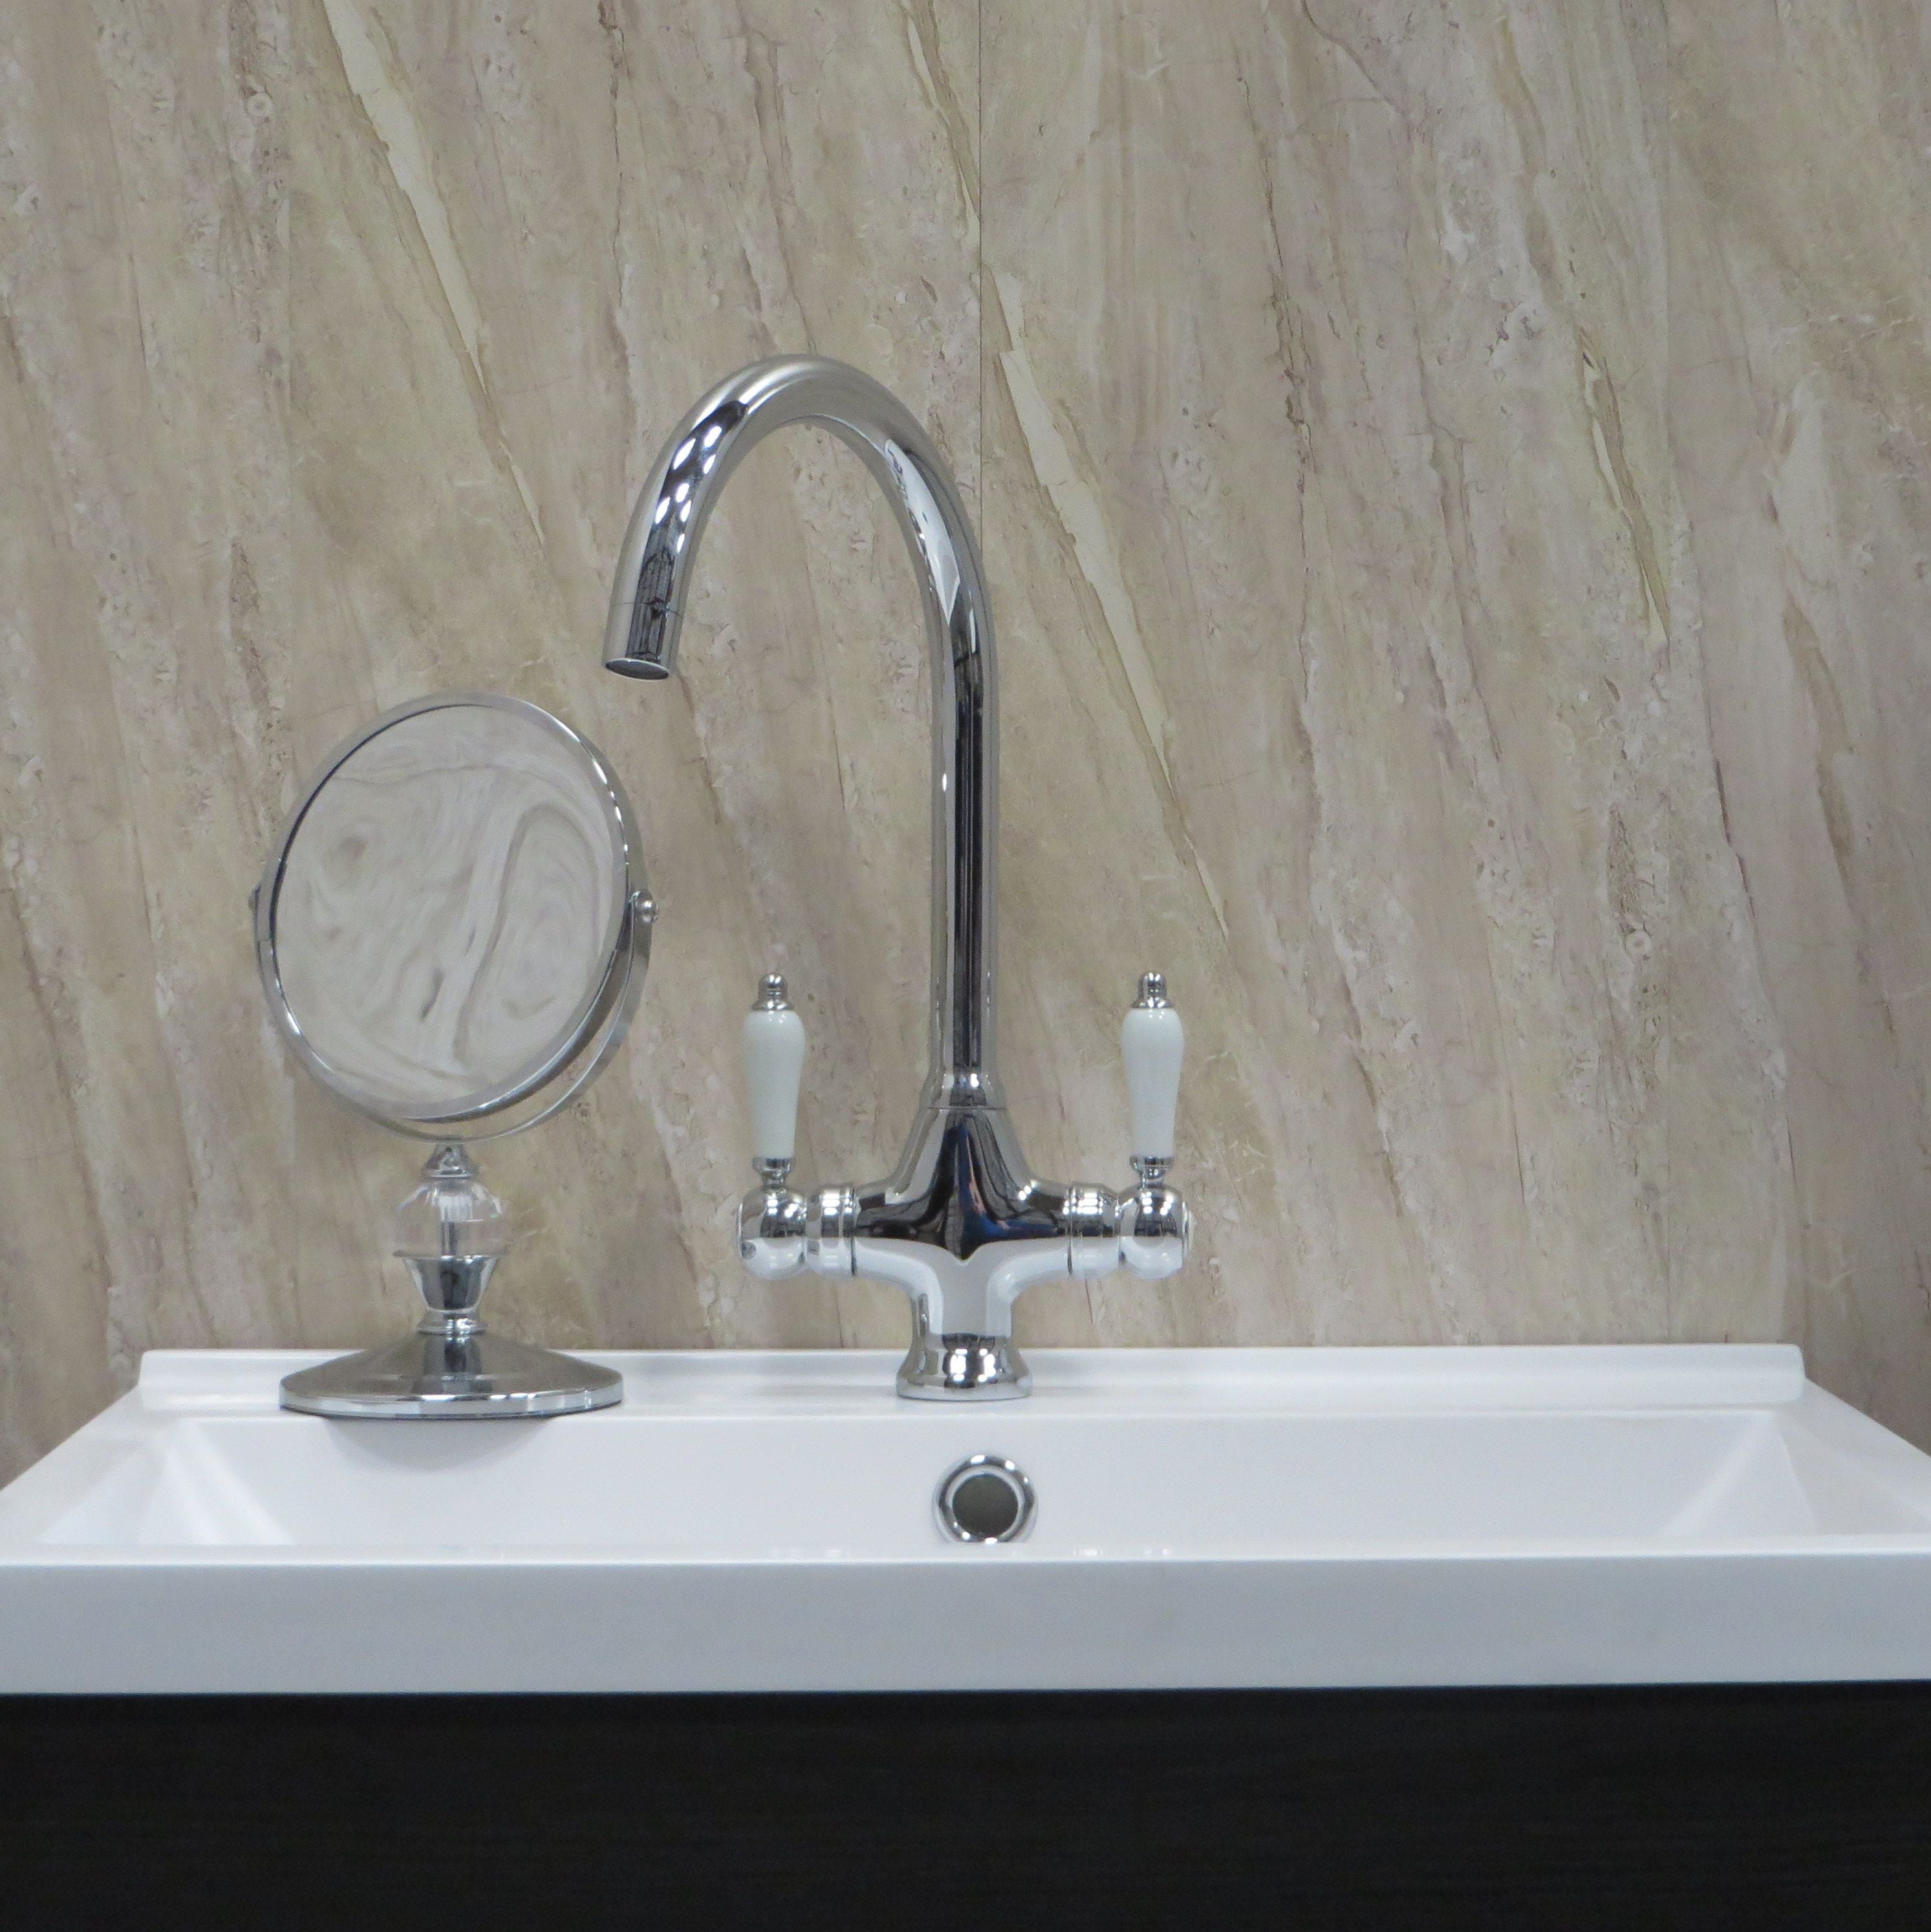 Beige Natural Sandstone 10mm Bathroom Cladding PVC Shower Panels